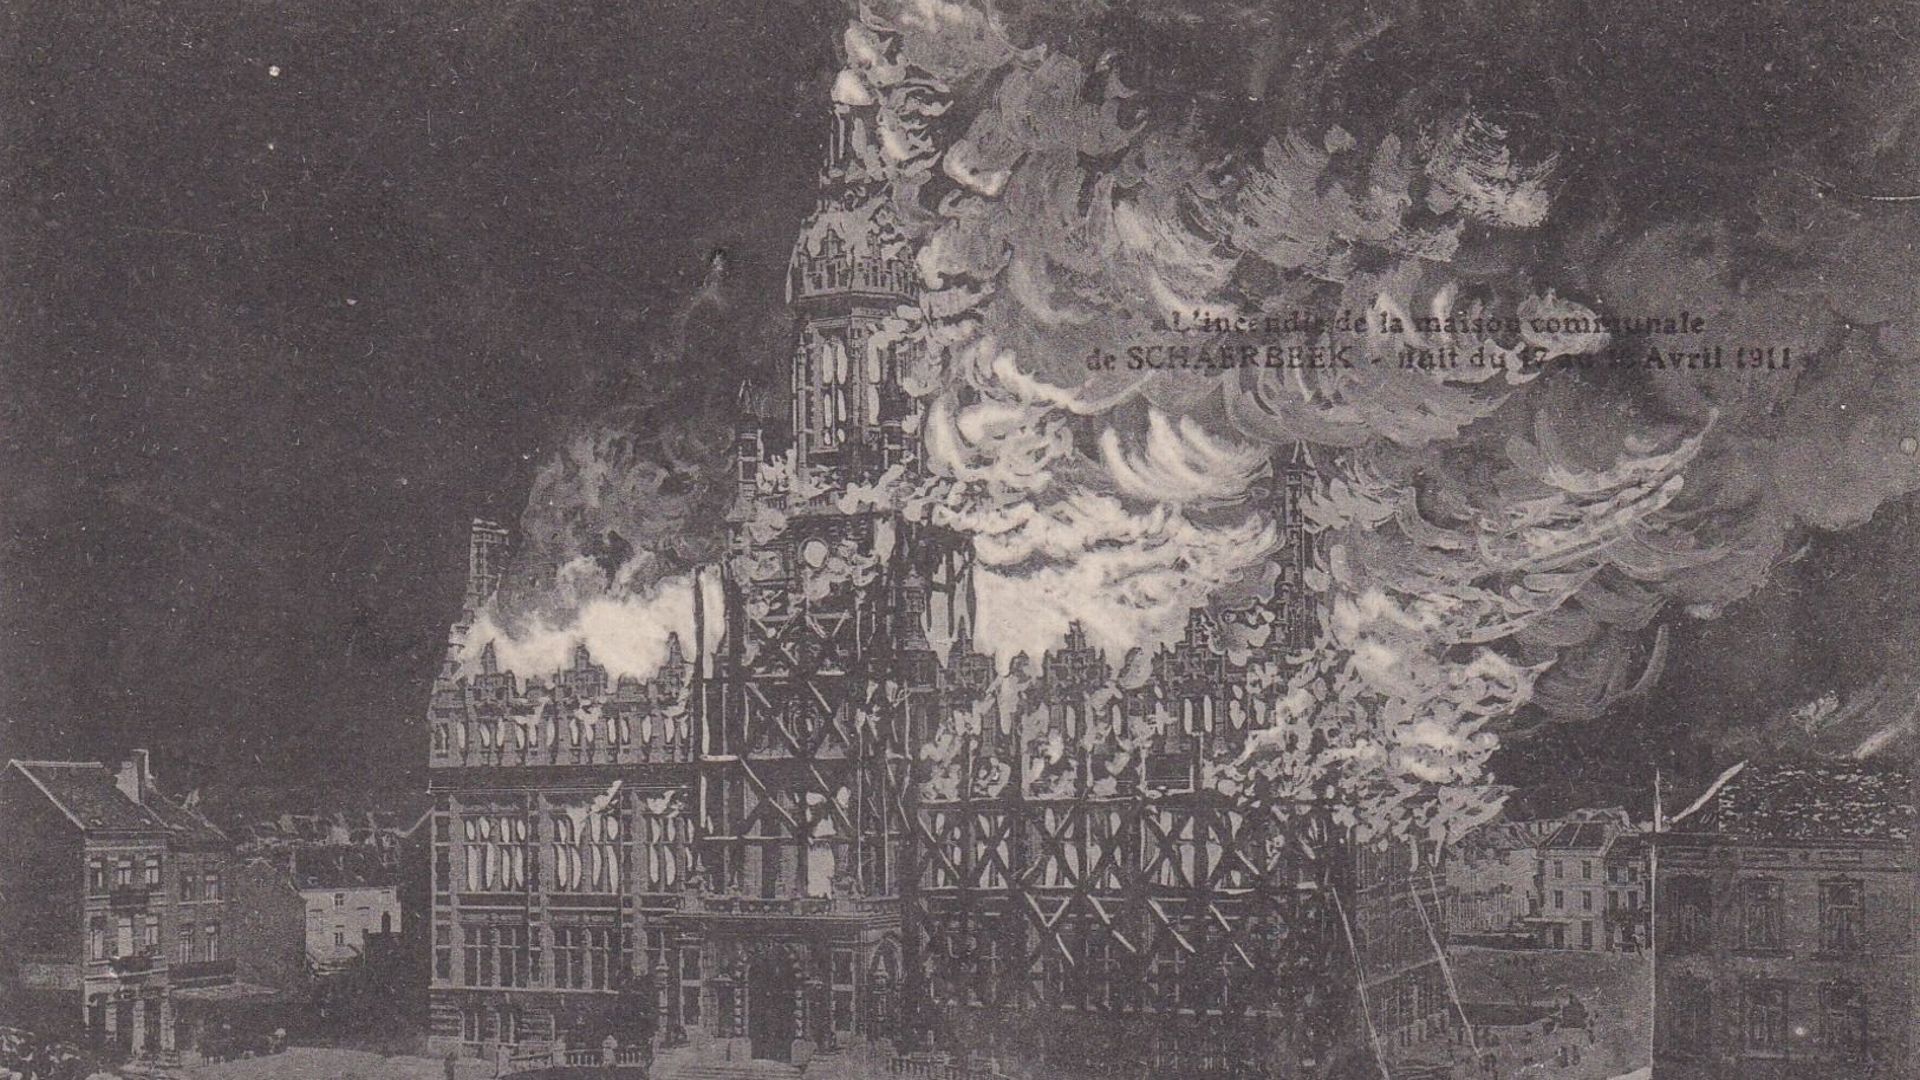 L’incendie de l’hôtel communal de Schaerbeek dans la nuit du 17 au 18 avril 1911.